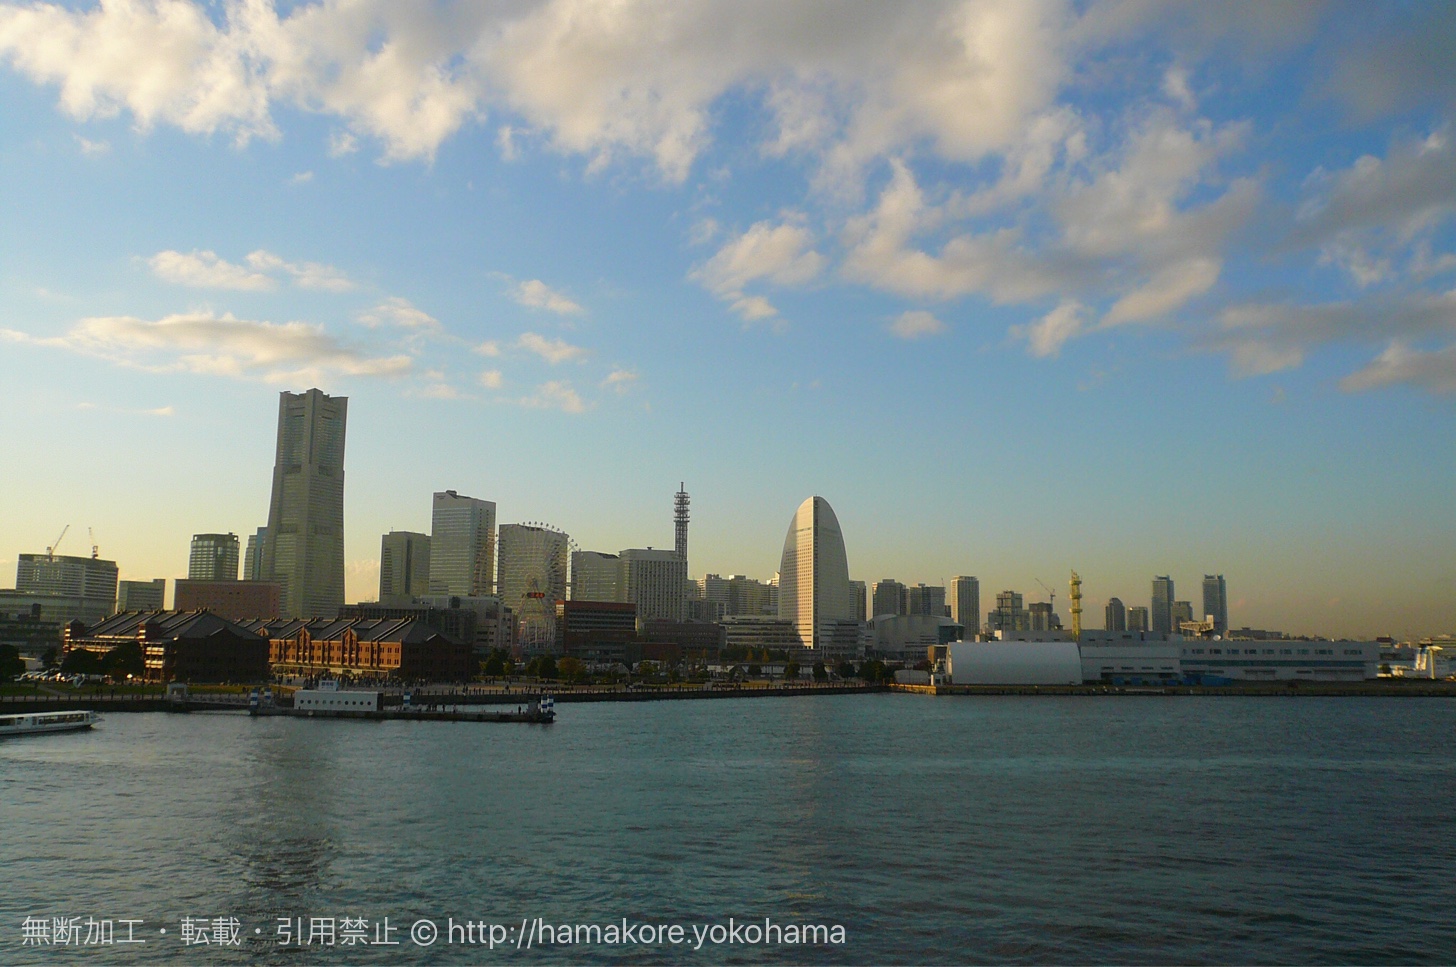 大さん橋から見た横浜みなとみらいの景色